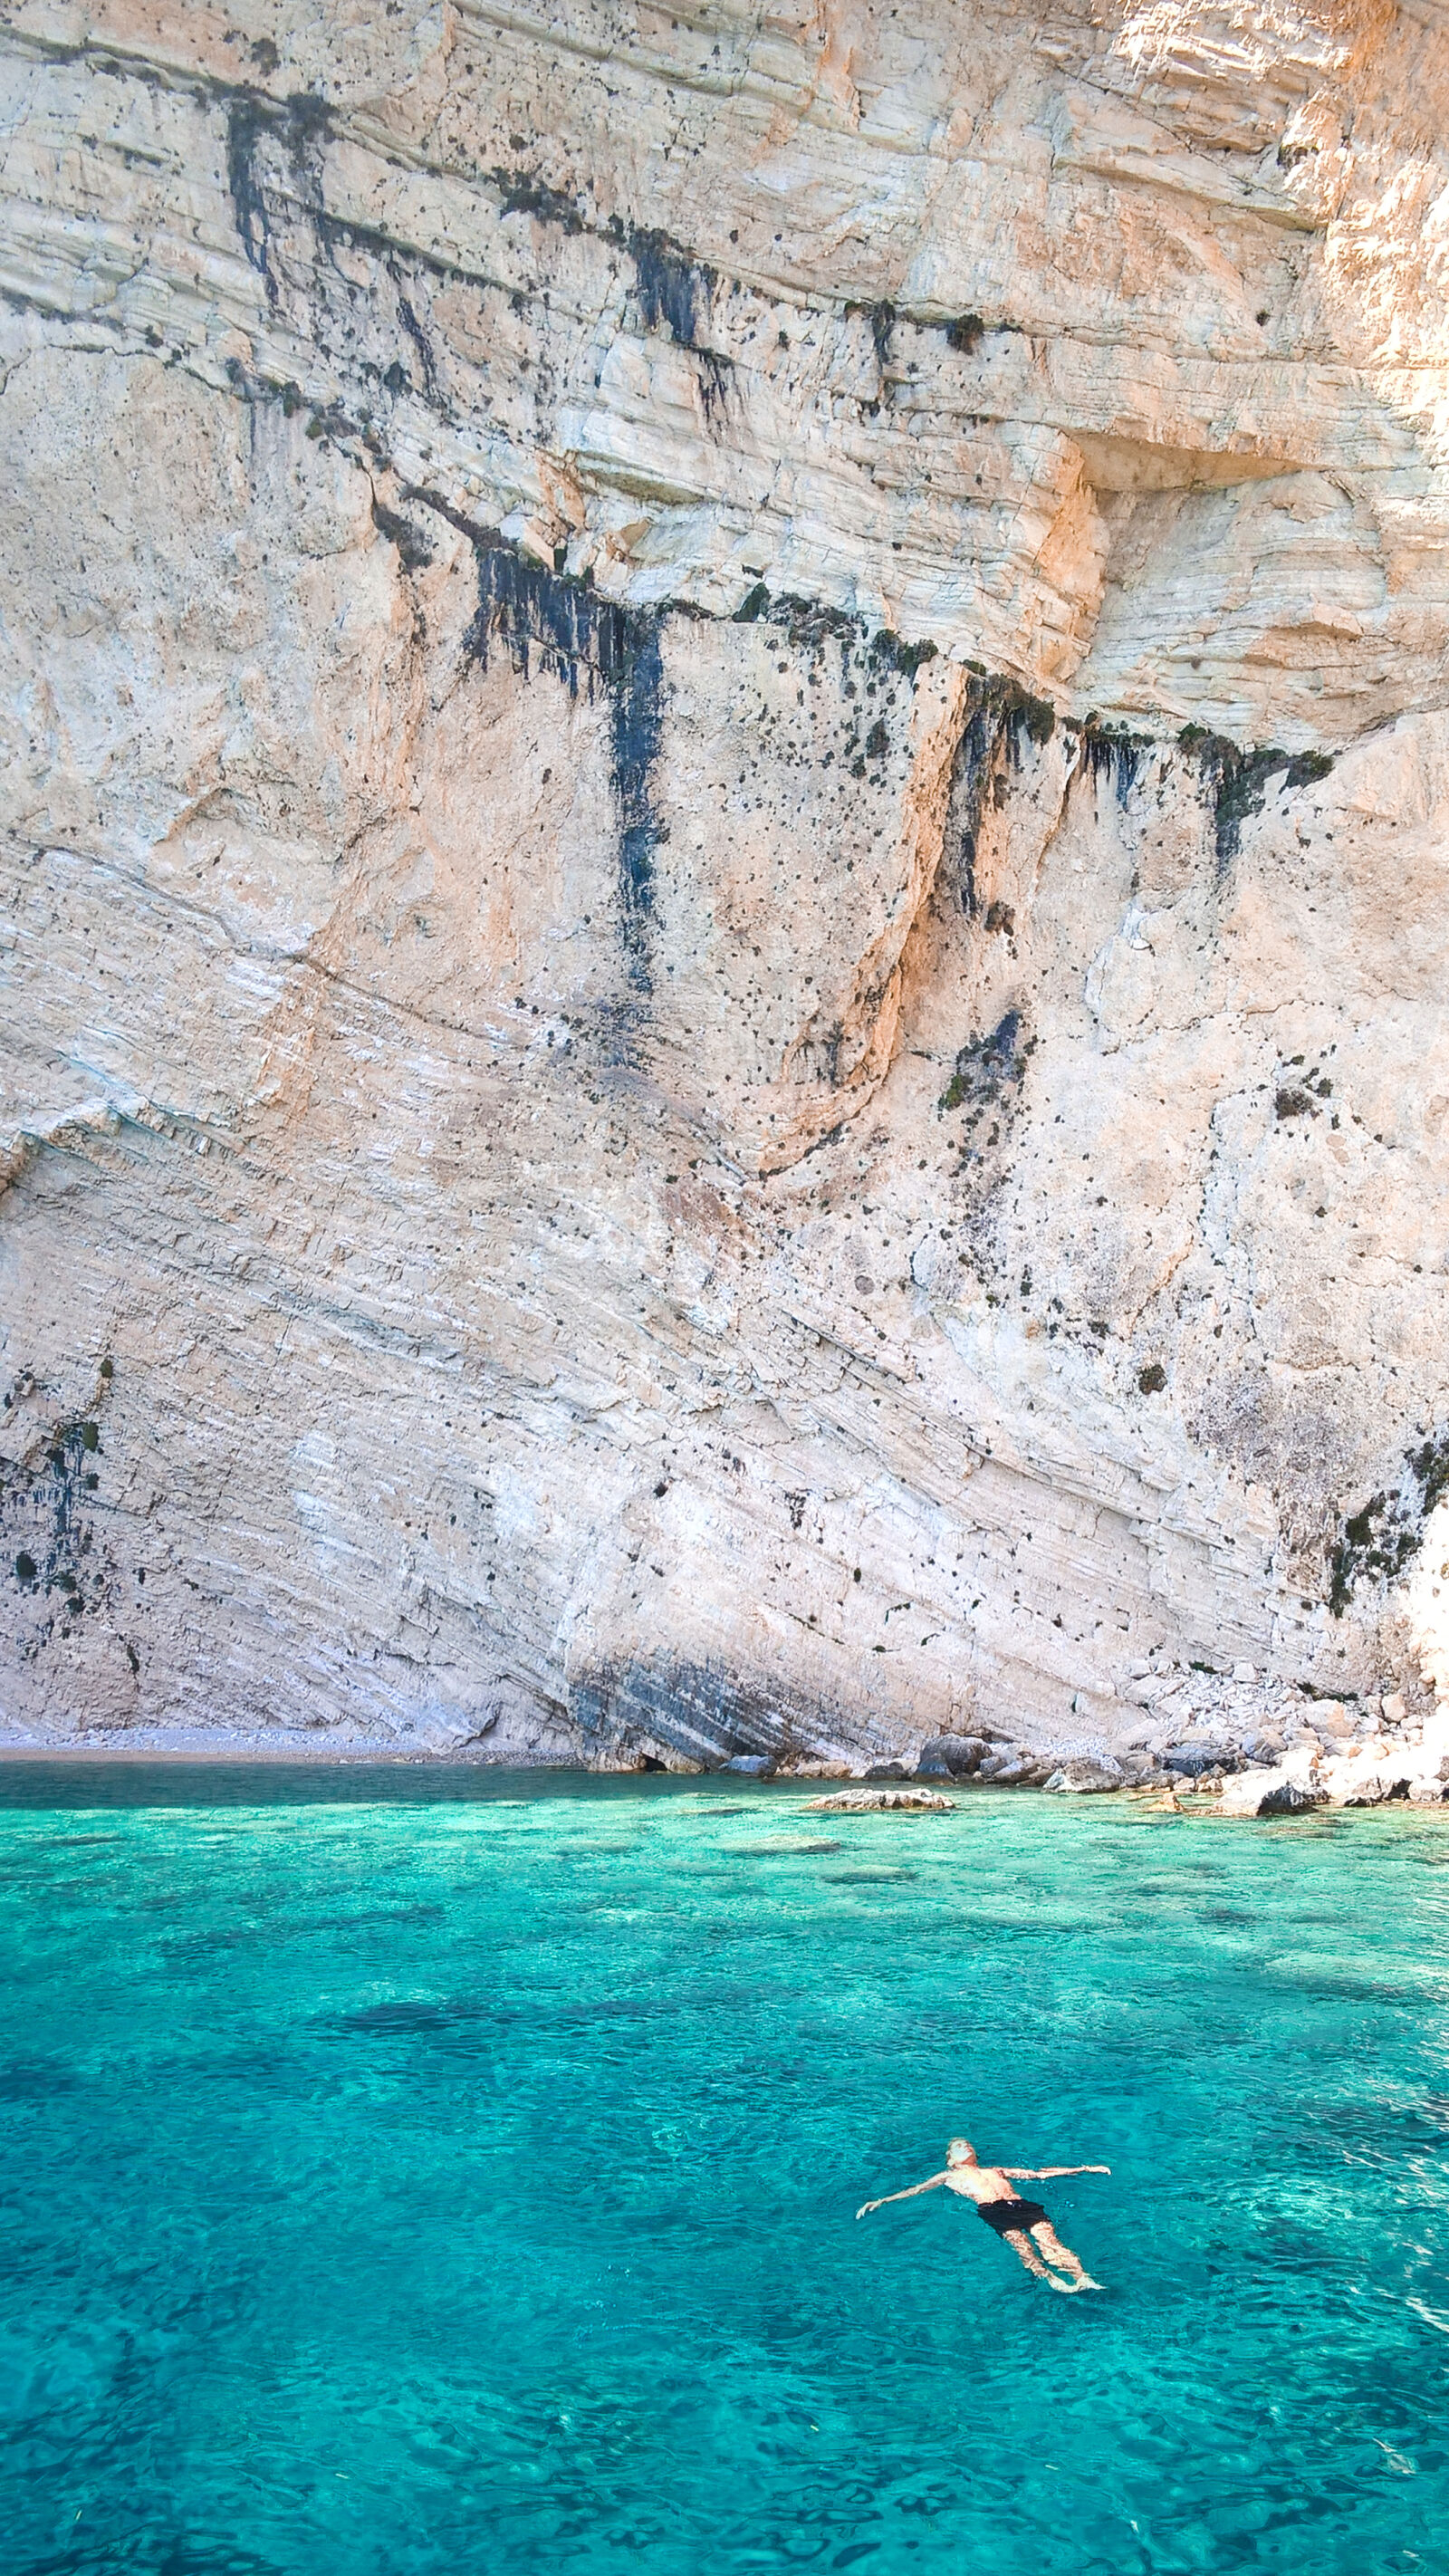 Nokia Lumia 830 sample photo. Sea, beach, holiday, vacation photography